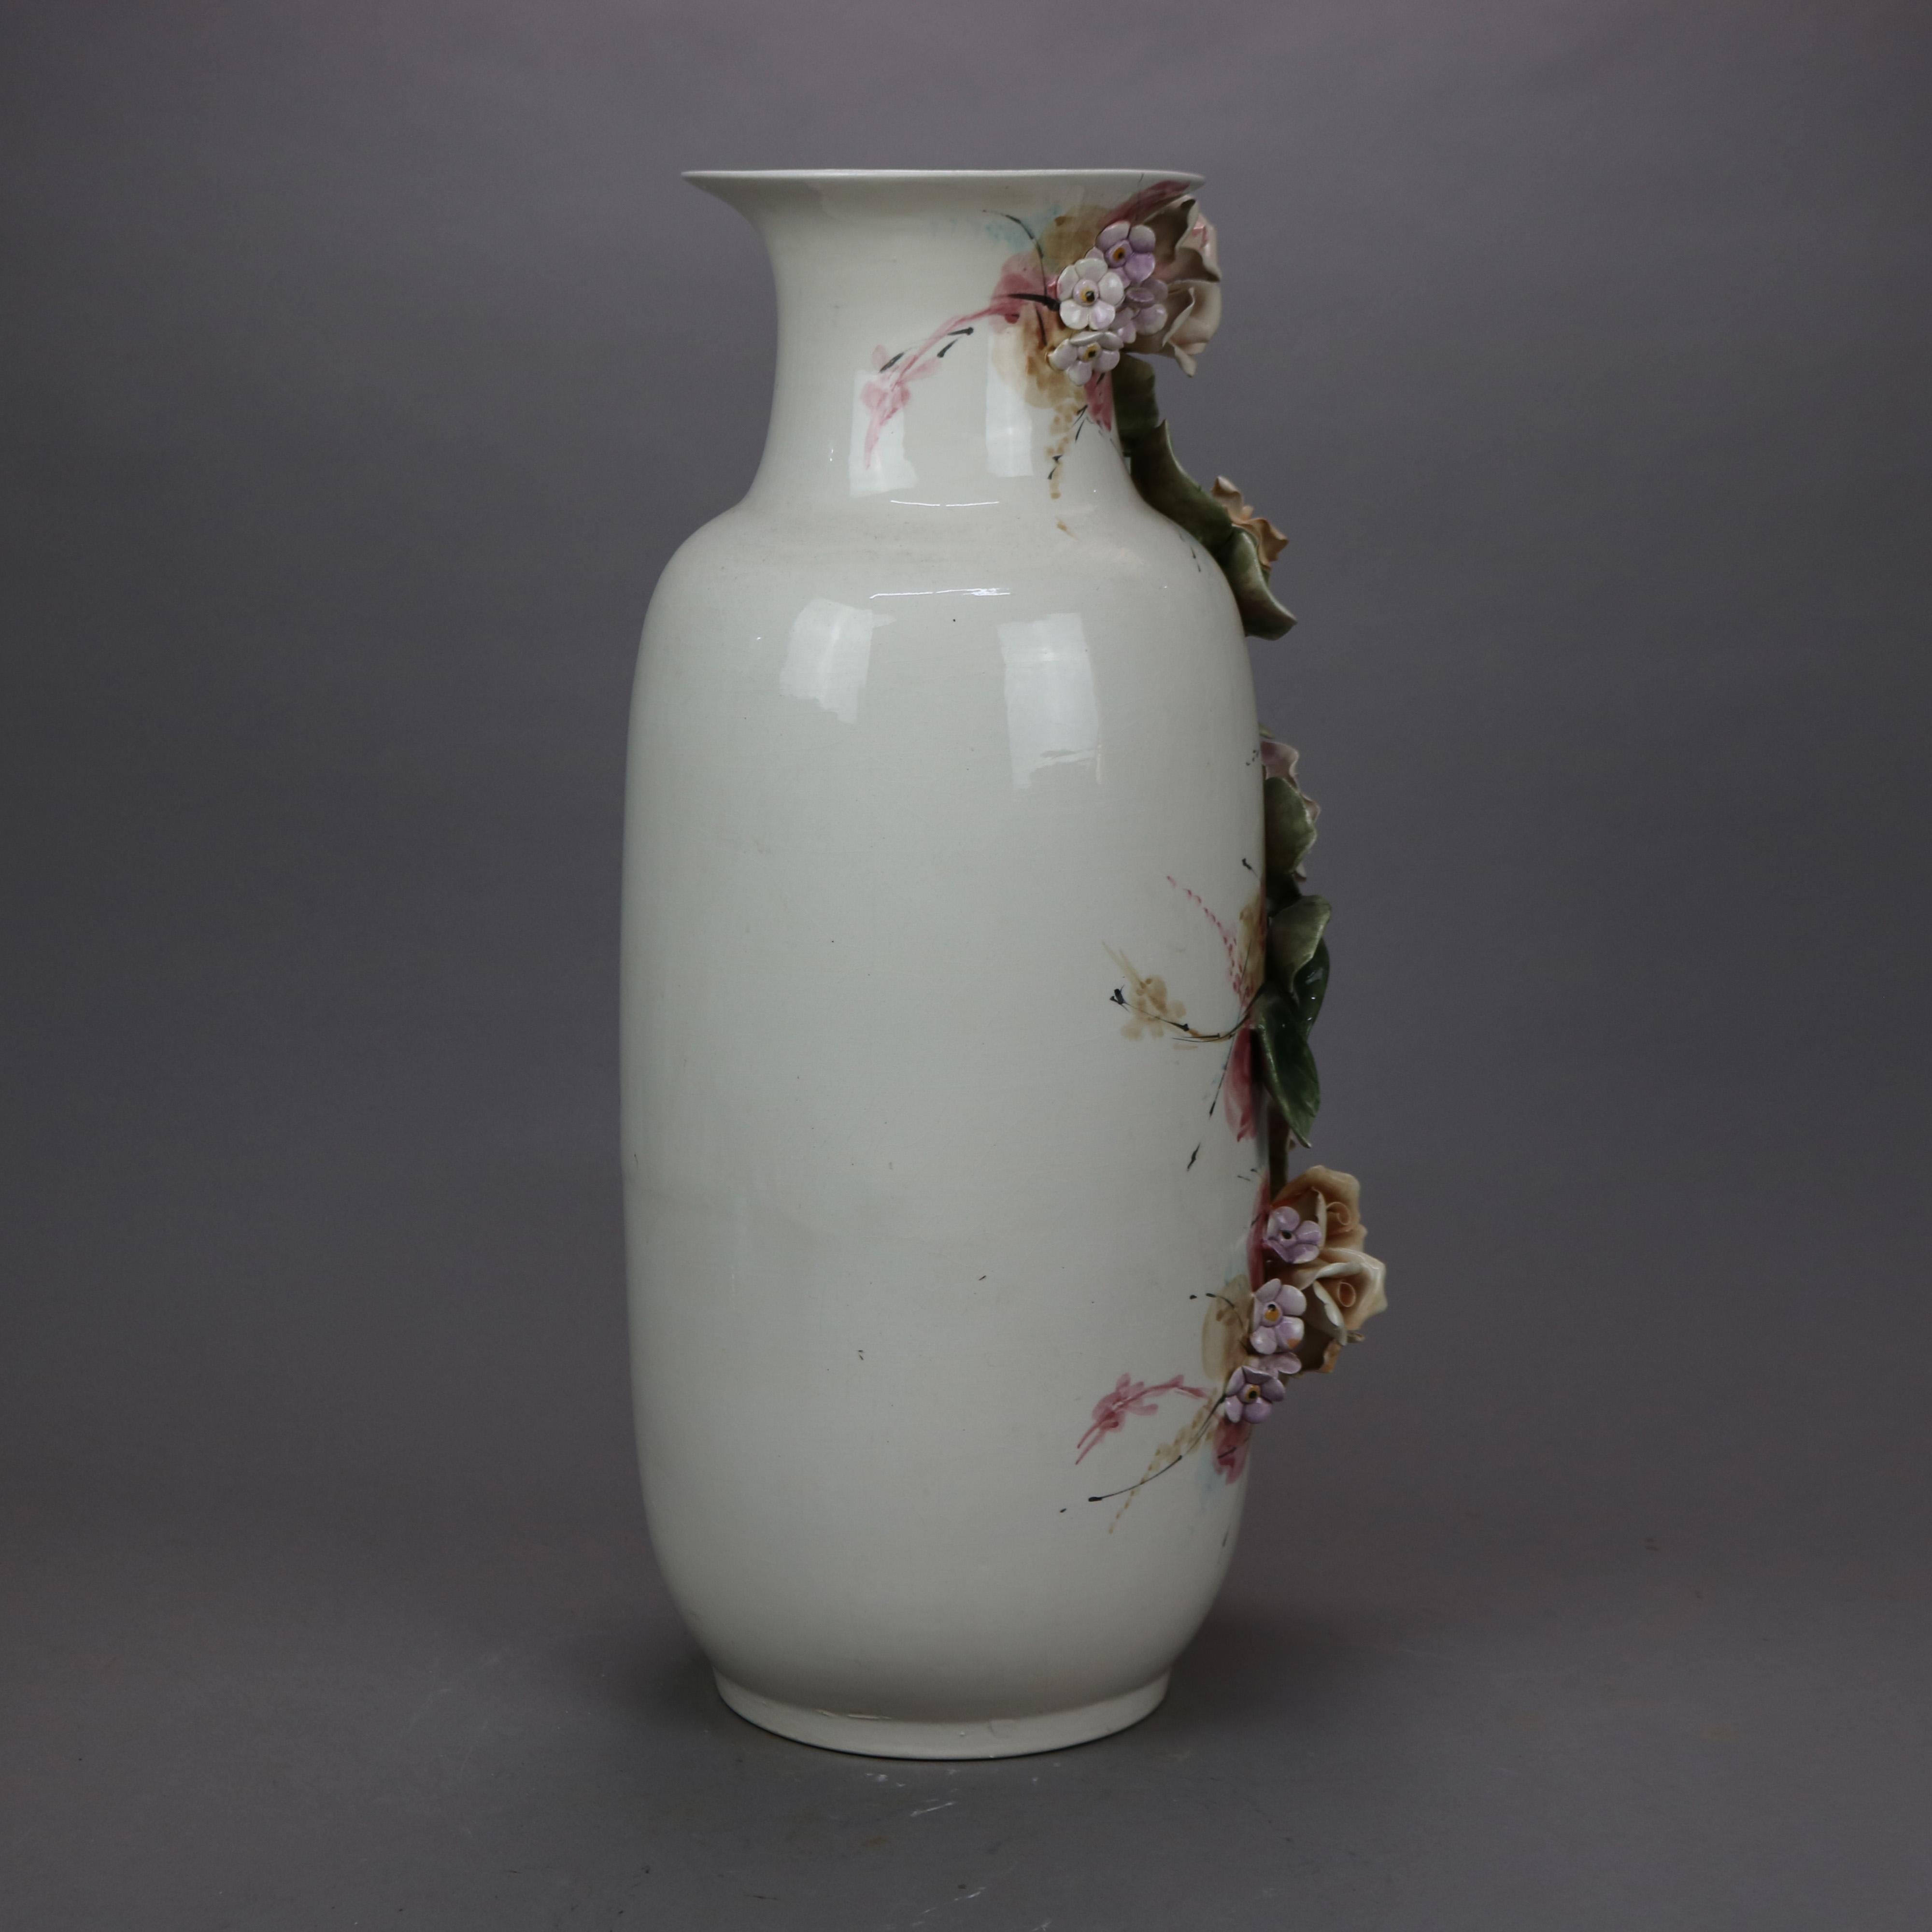 capodimonte vase with flowers